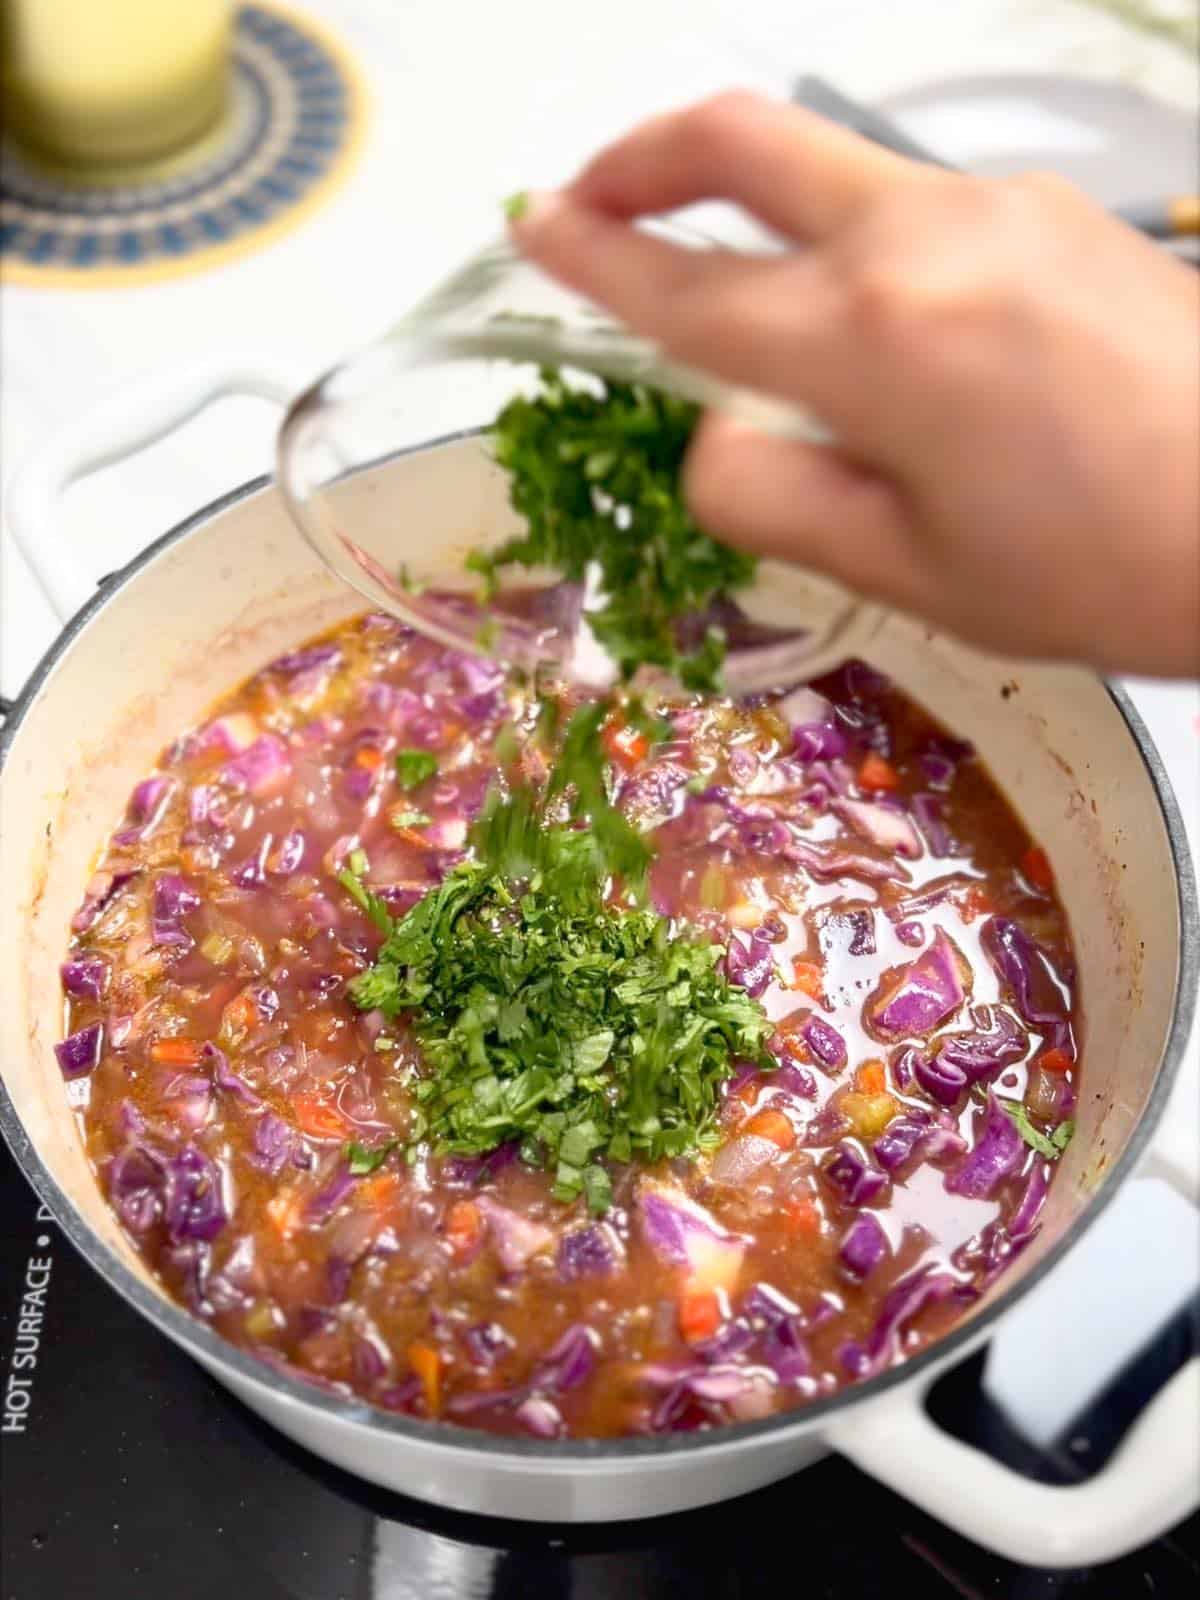 adding chopped cilantro to the soup